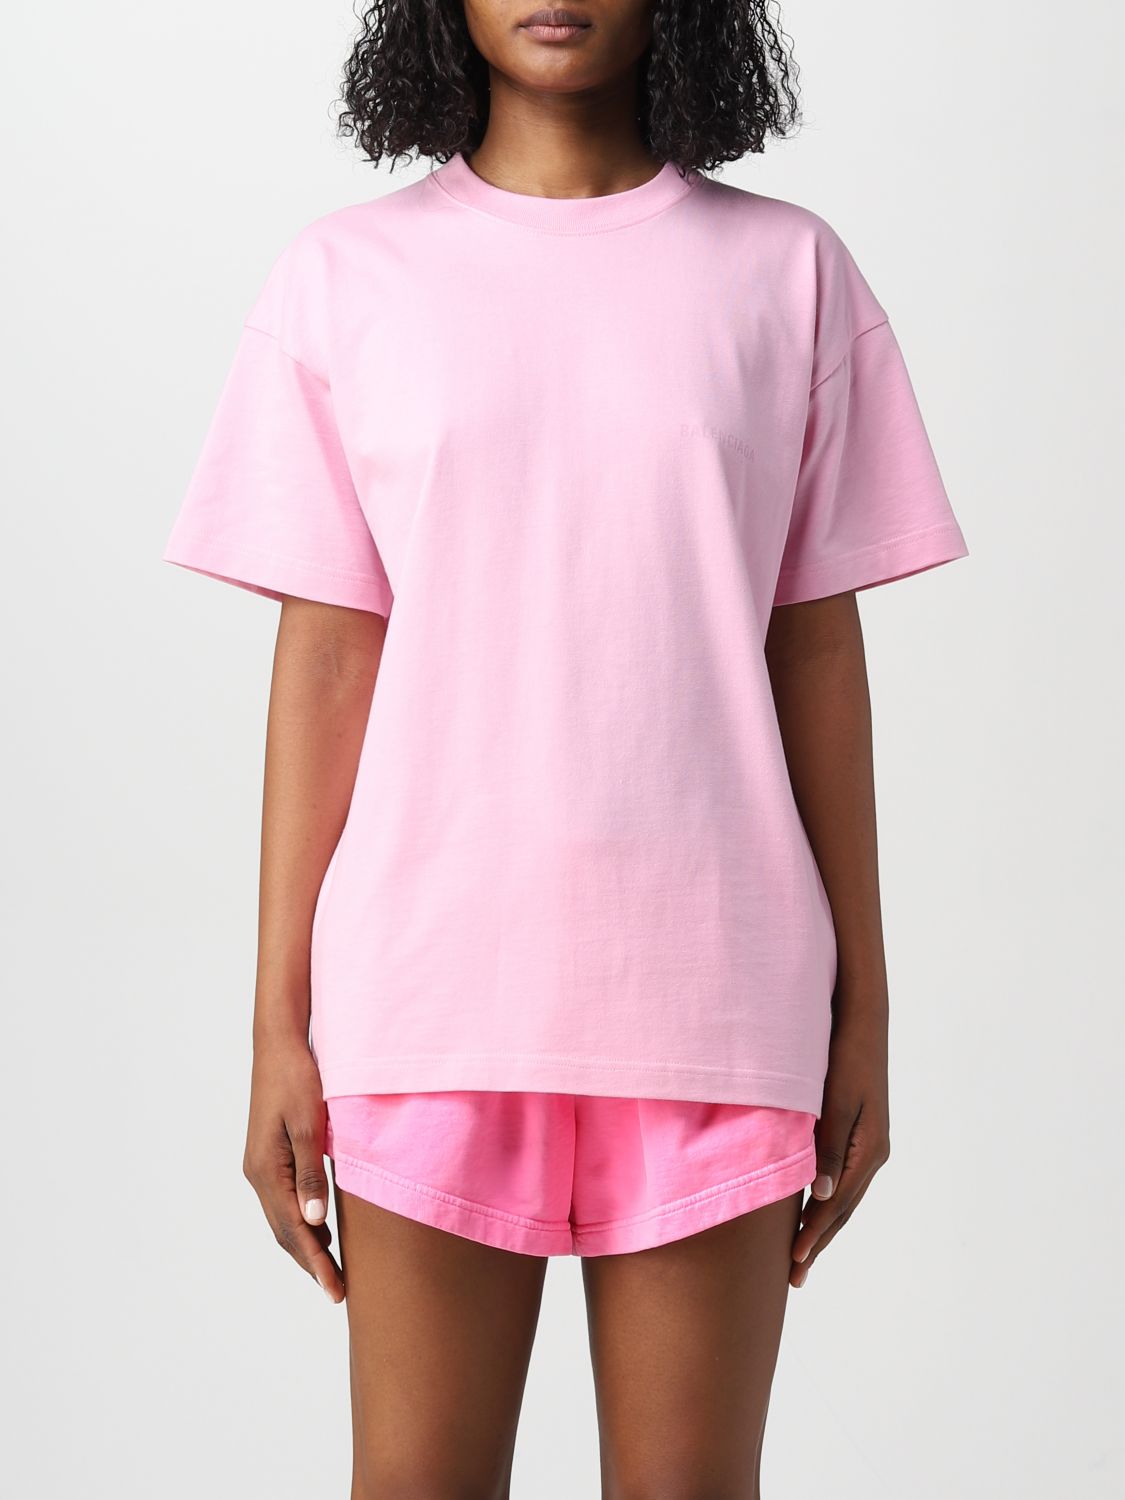 Fashion  Womens  TShirts  Balenciaga Embroidered Logo Pink TShirt